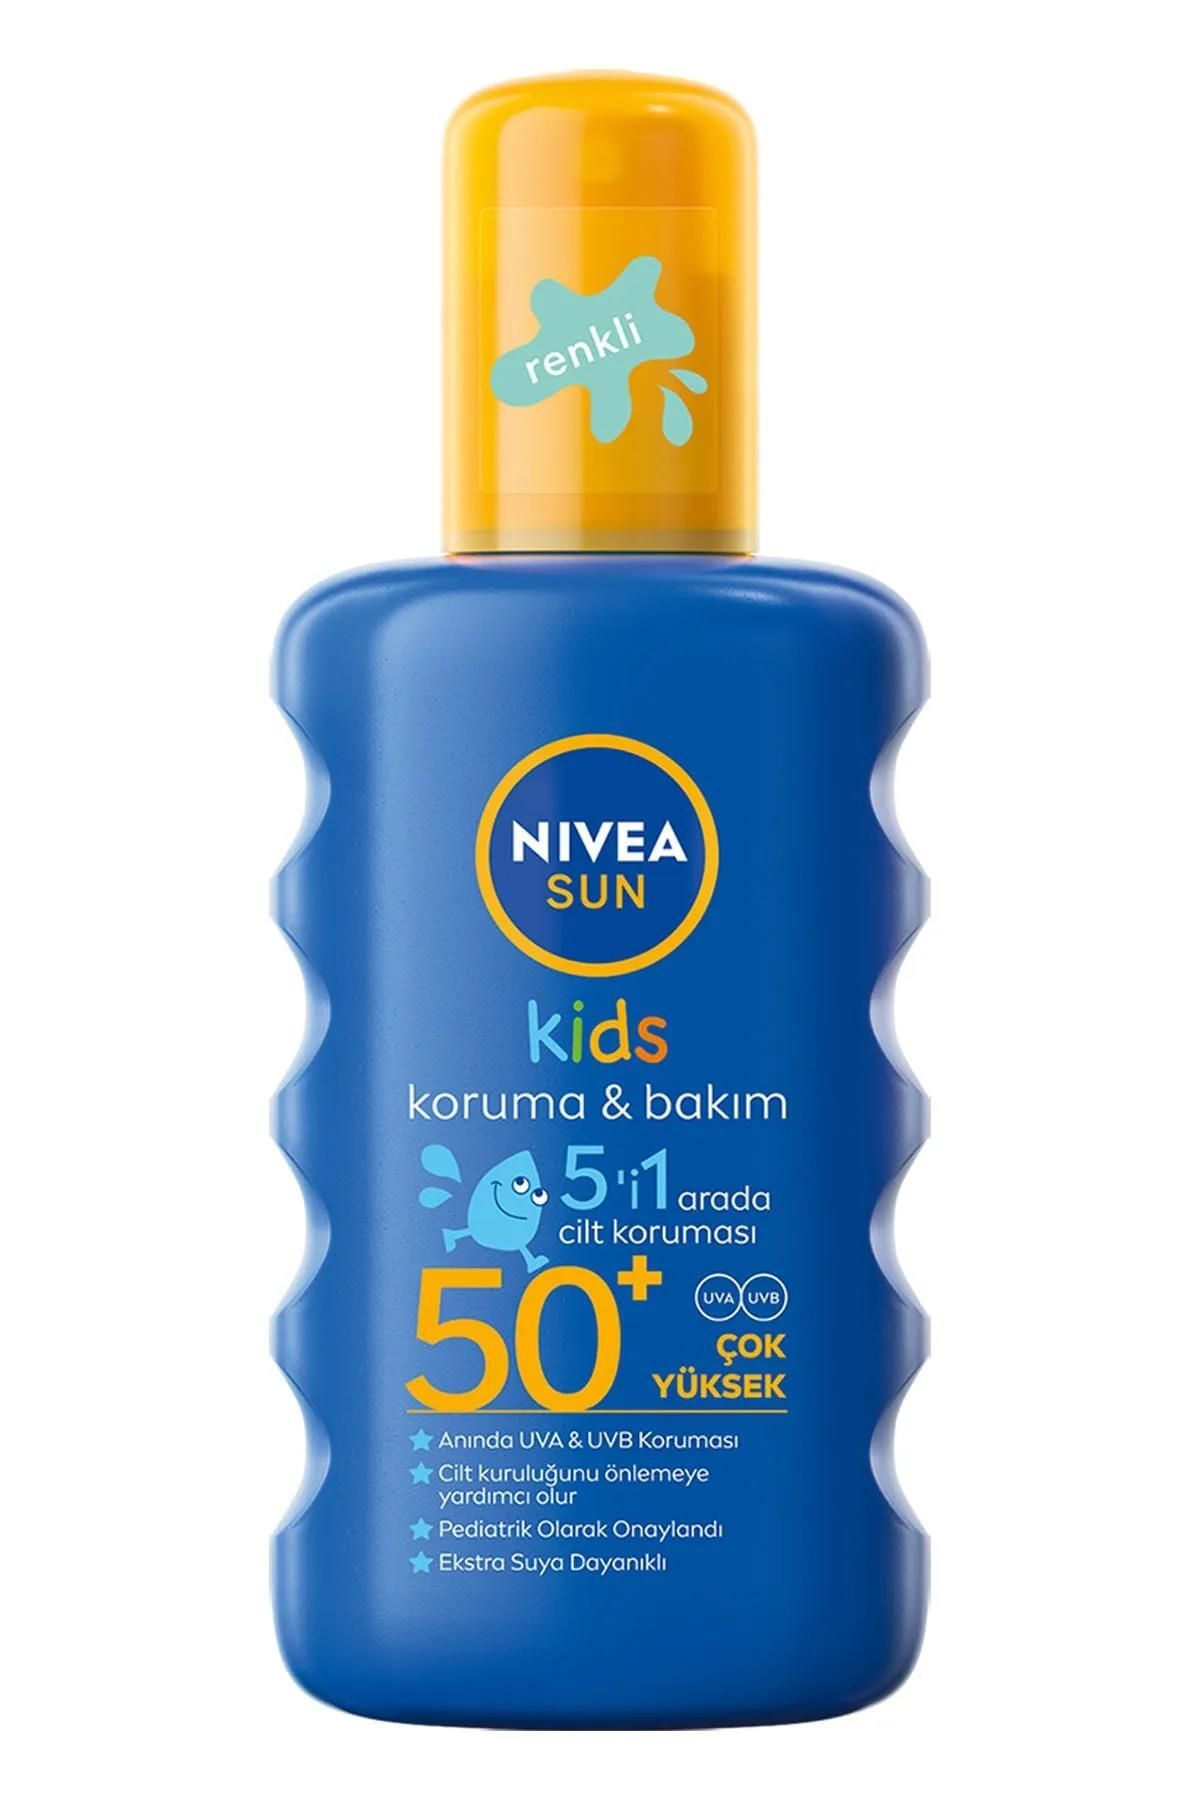 NIVEA Sun Kids Bebekler Için Hassas Güneş Koruyucu 200ml, Spf50, Nemlendirici, Suya Dayanıklı